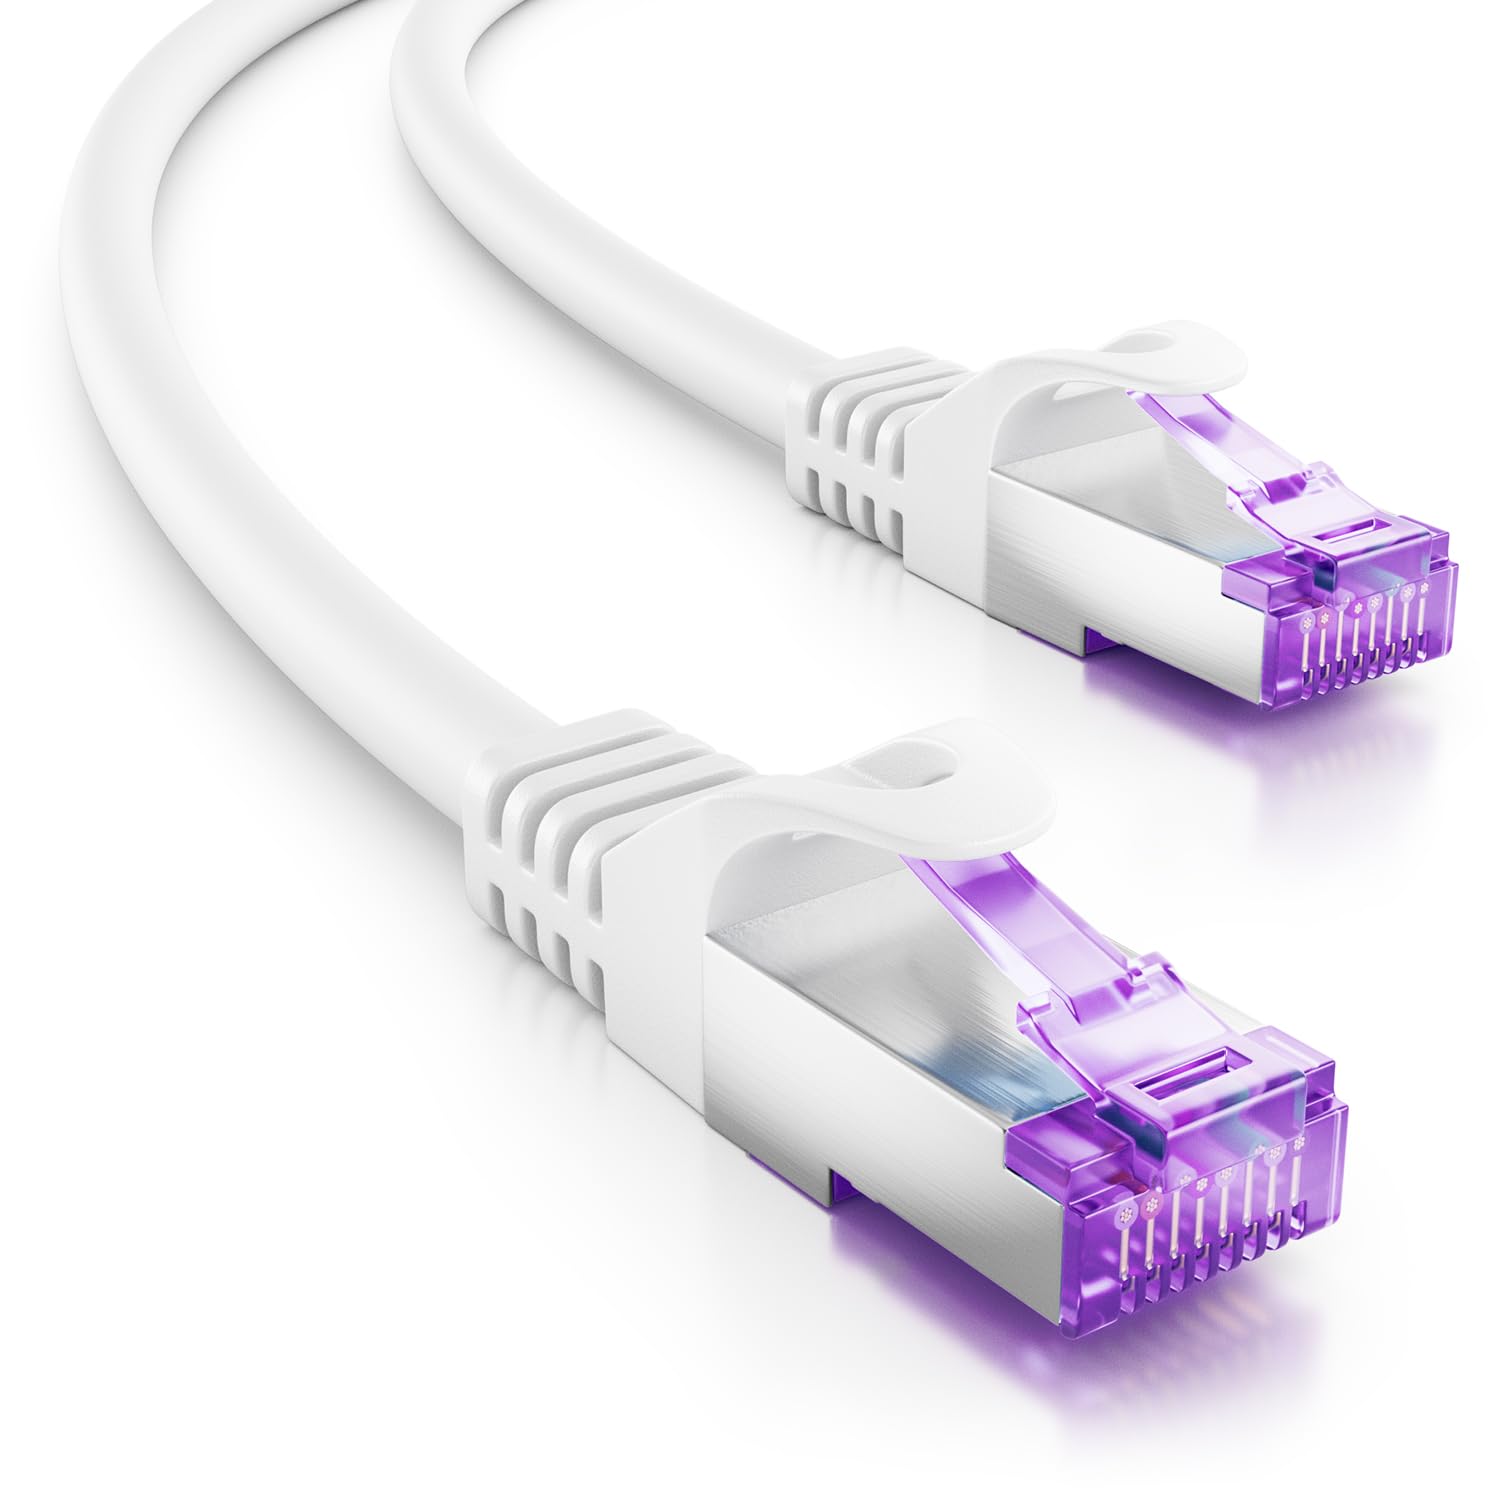 deleyCON 30m CAT7 Netzwerkkabel - 10 Gigabit - RJ45 Patchkabel Ethernet Kabel (Kupfer, SFTP PiMF Schirmung) - für Highspeed LAN DSL Switch Modem Router Patchpanel CAT7 CAT6 CAT5 - Weiß